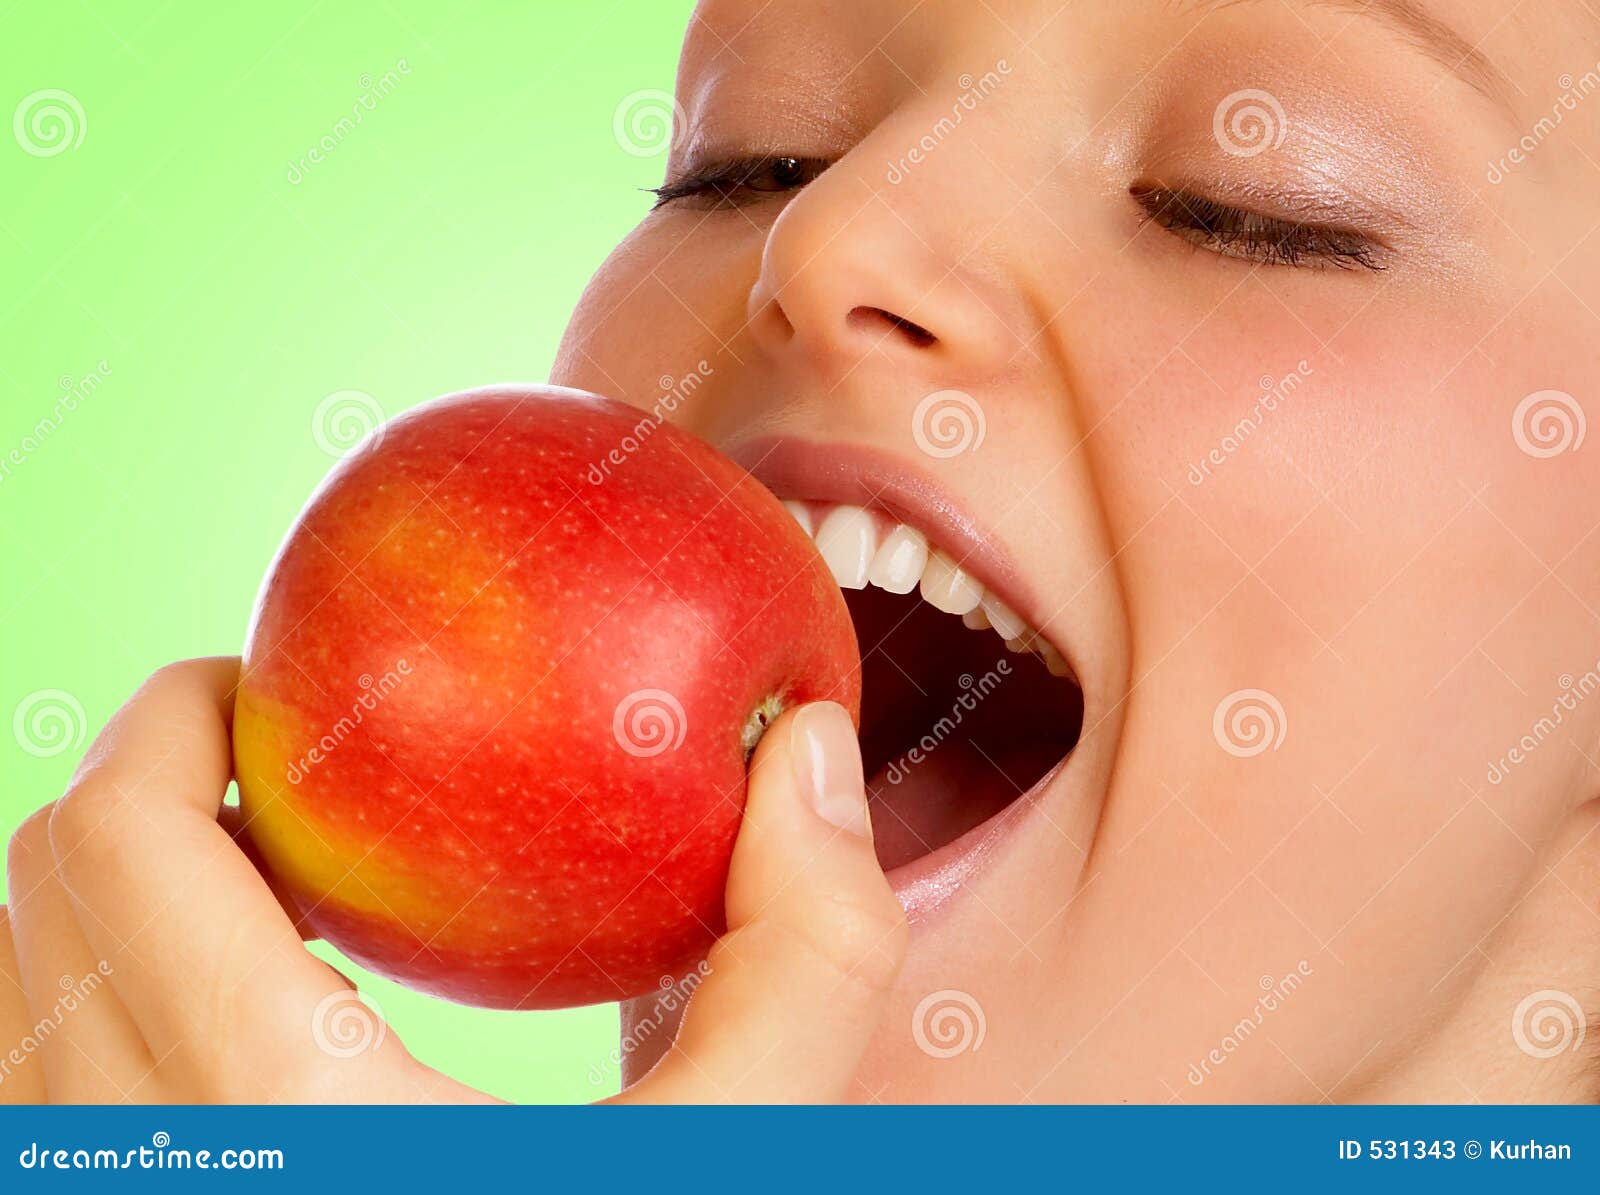 apple pleasure.